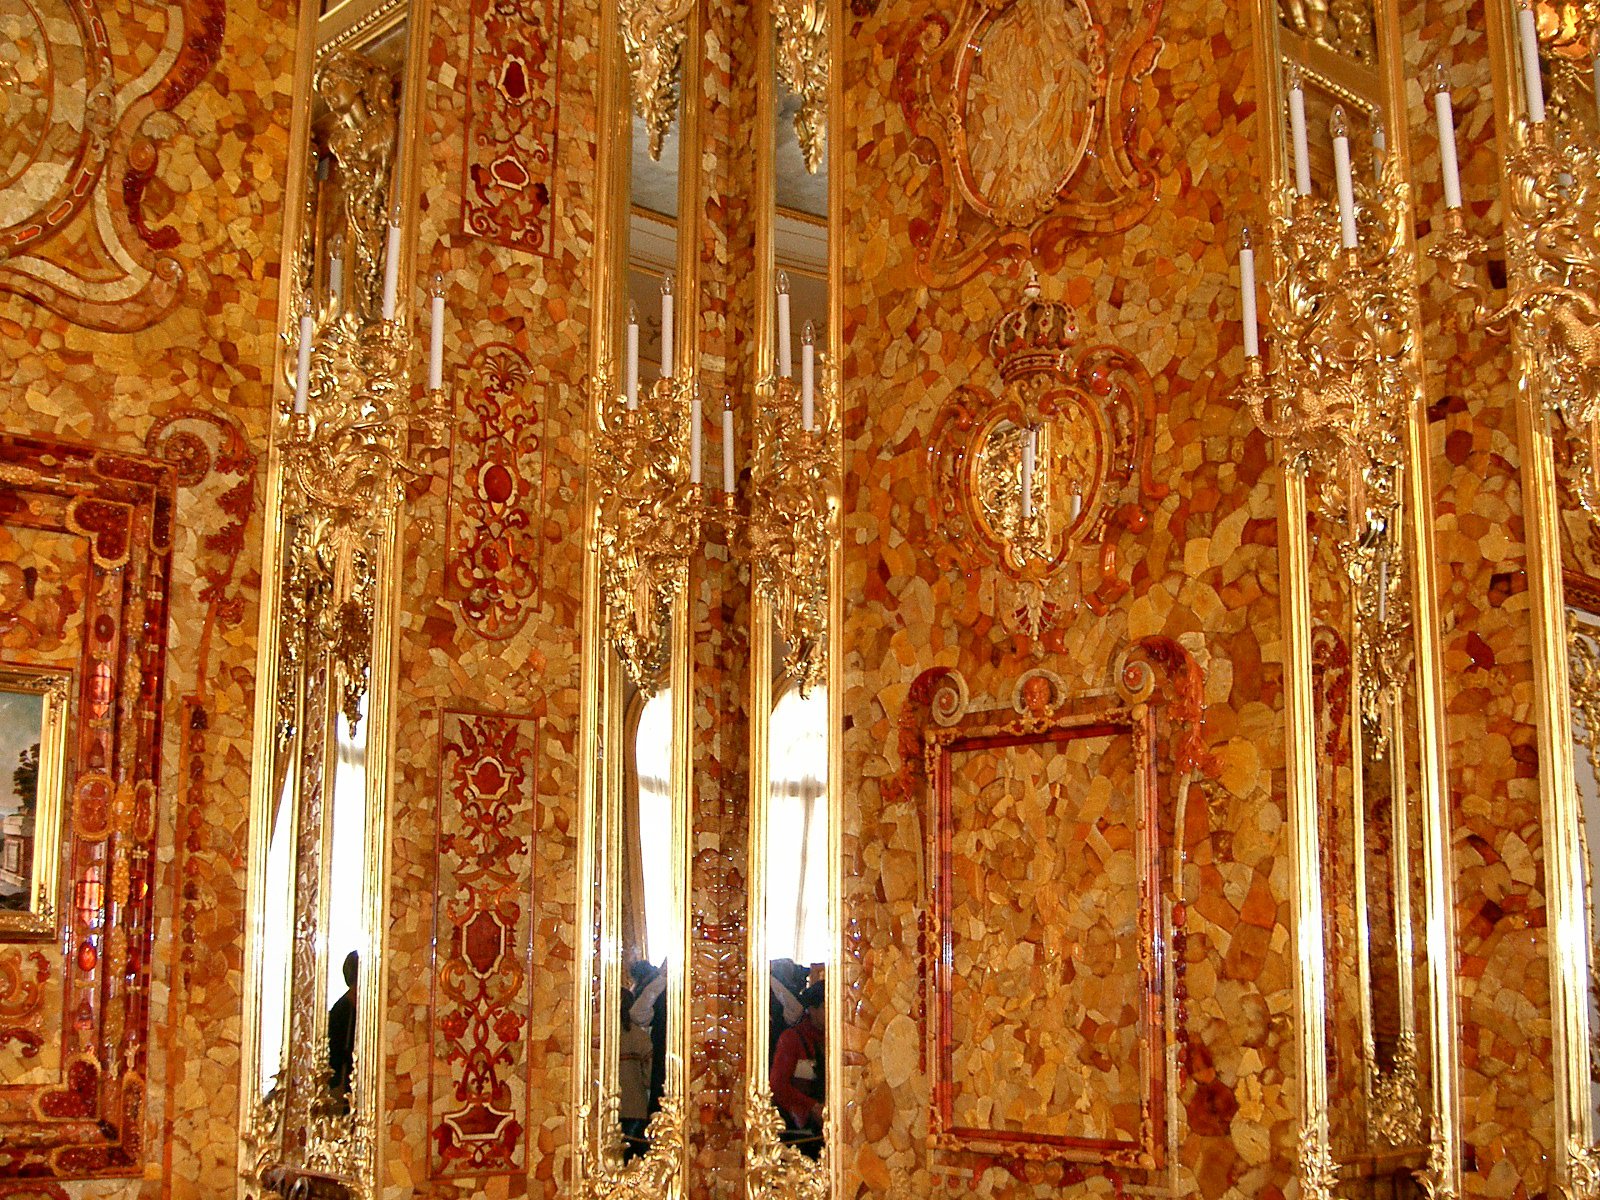 янтарная комната в калининграде фото